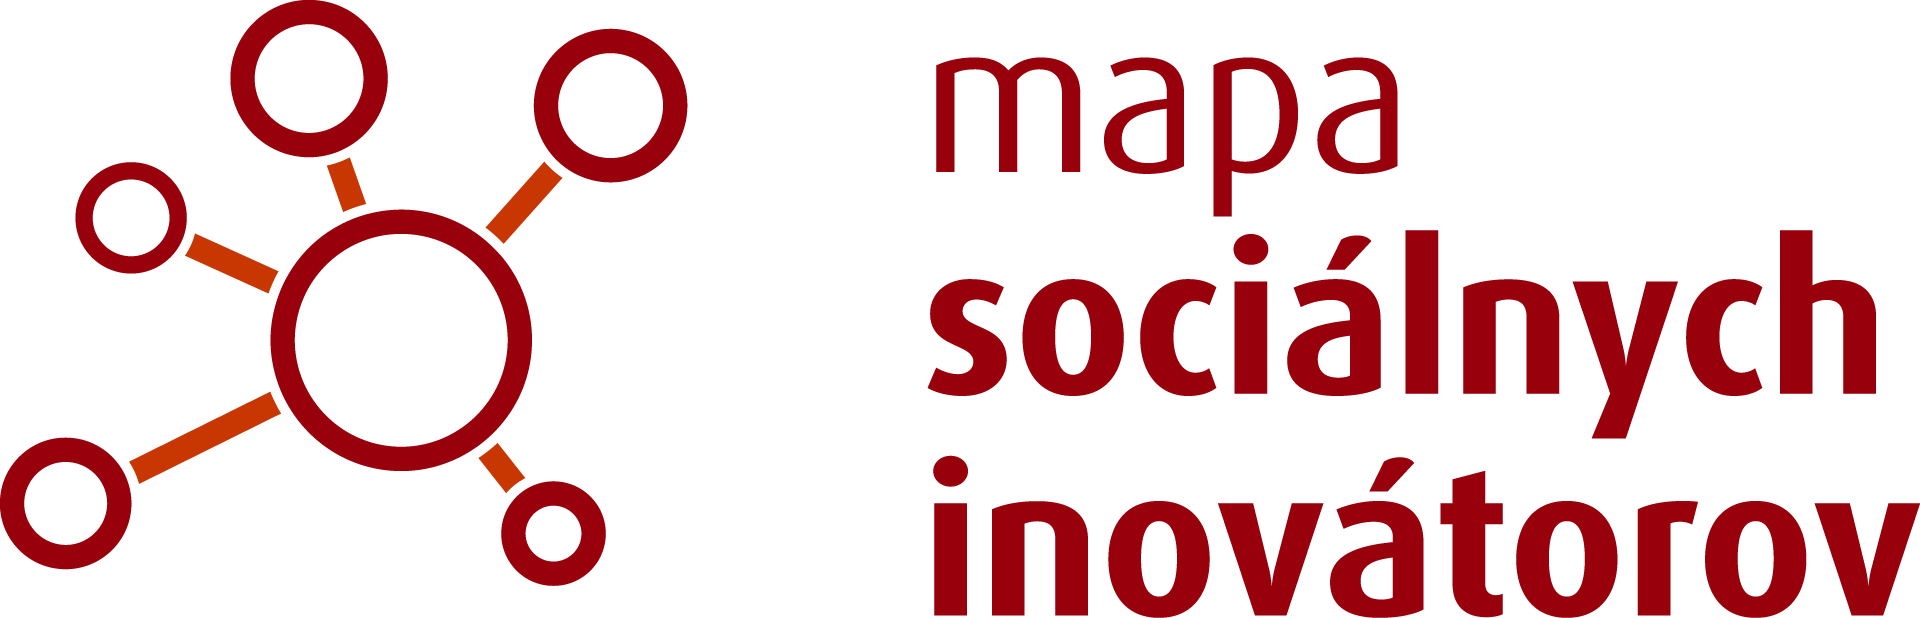 Mapa sociálnych inovátorov – analýza logo